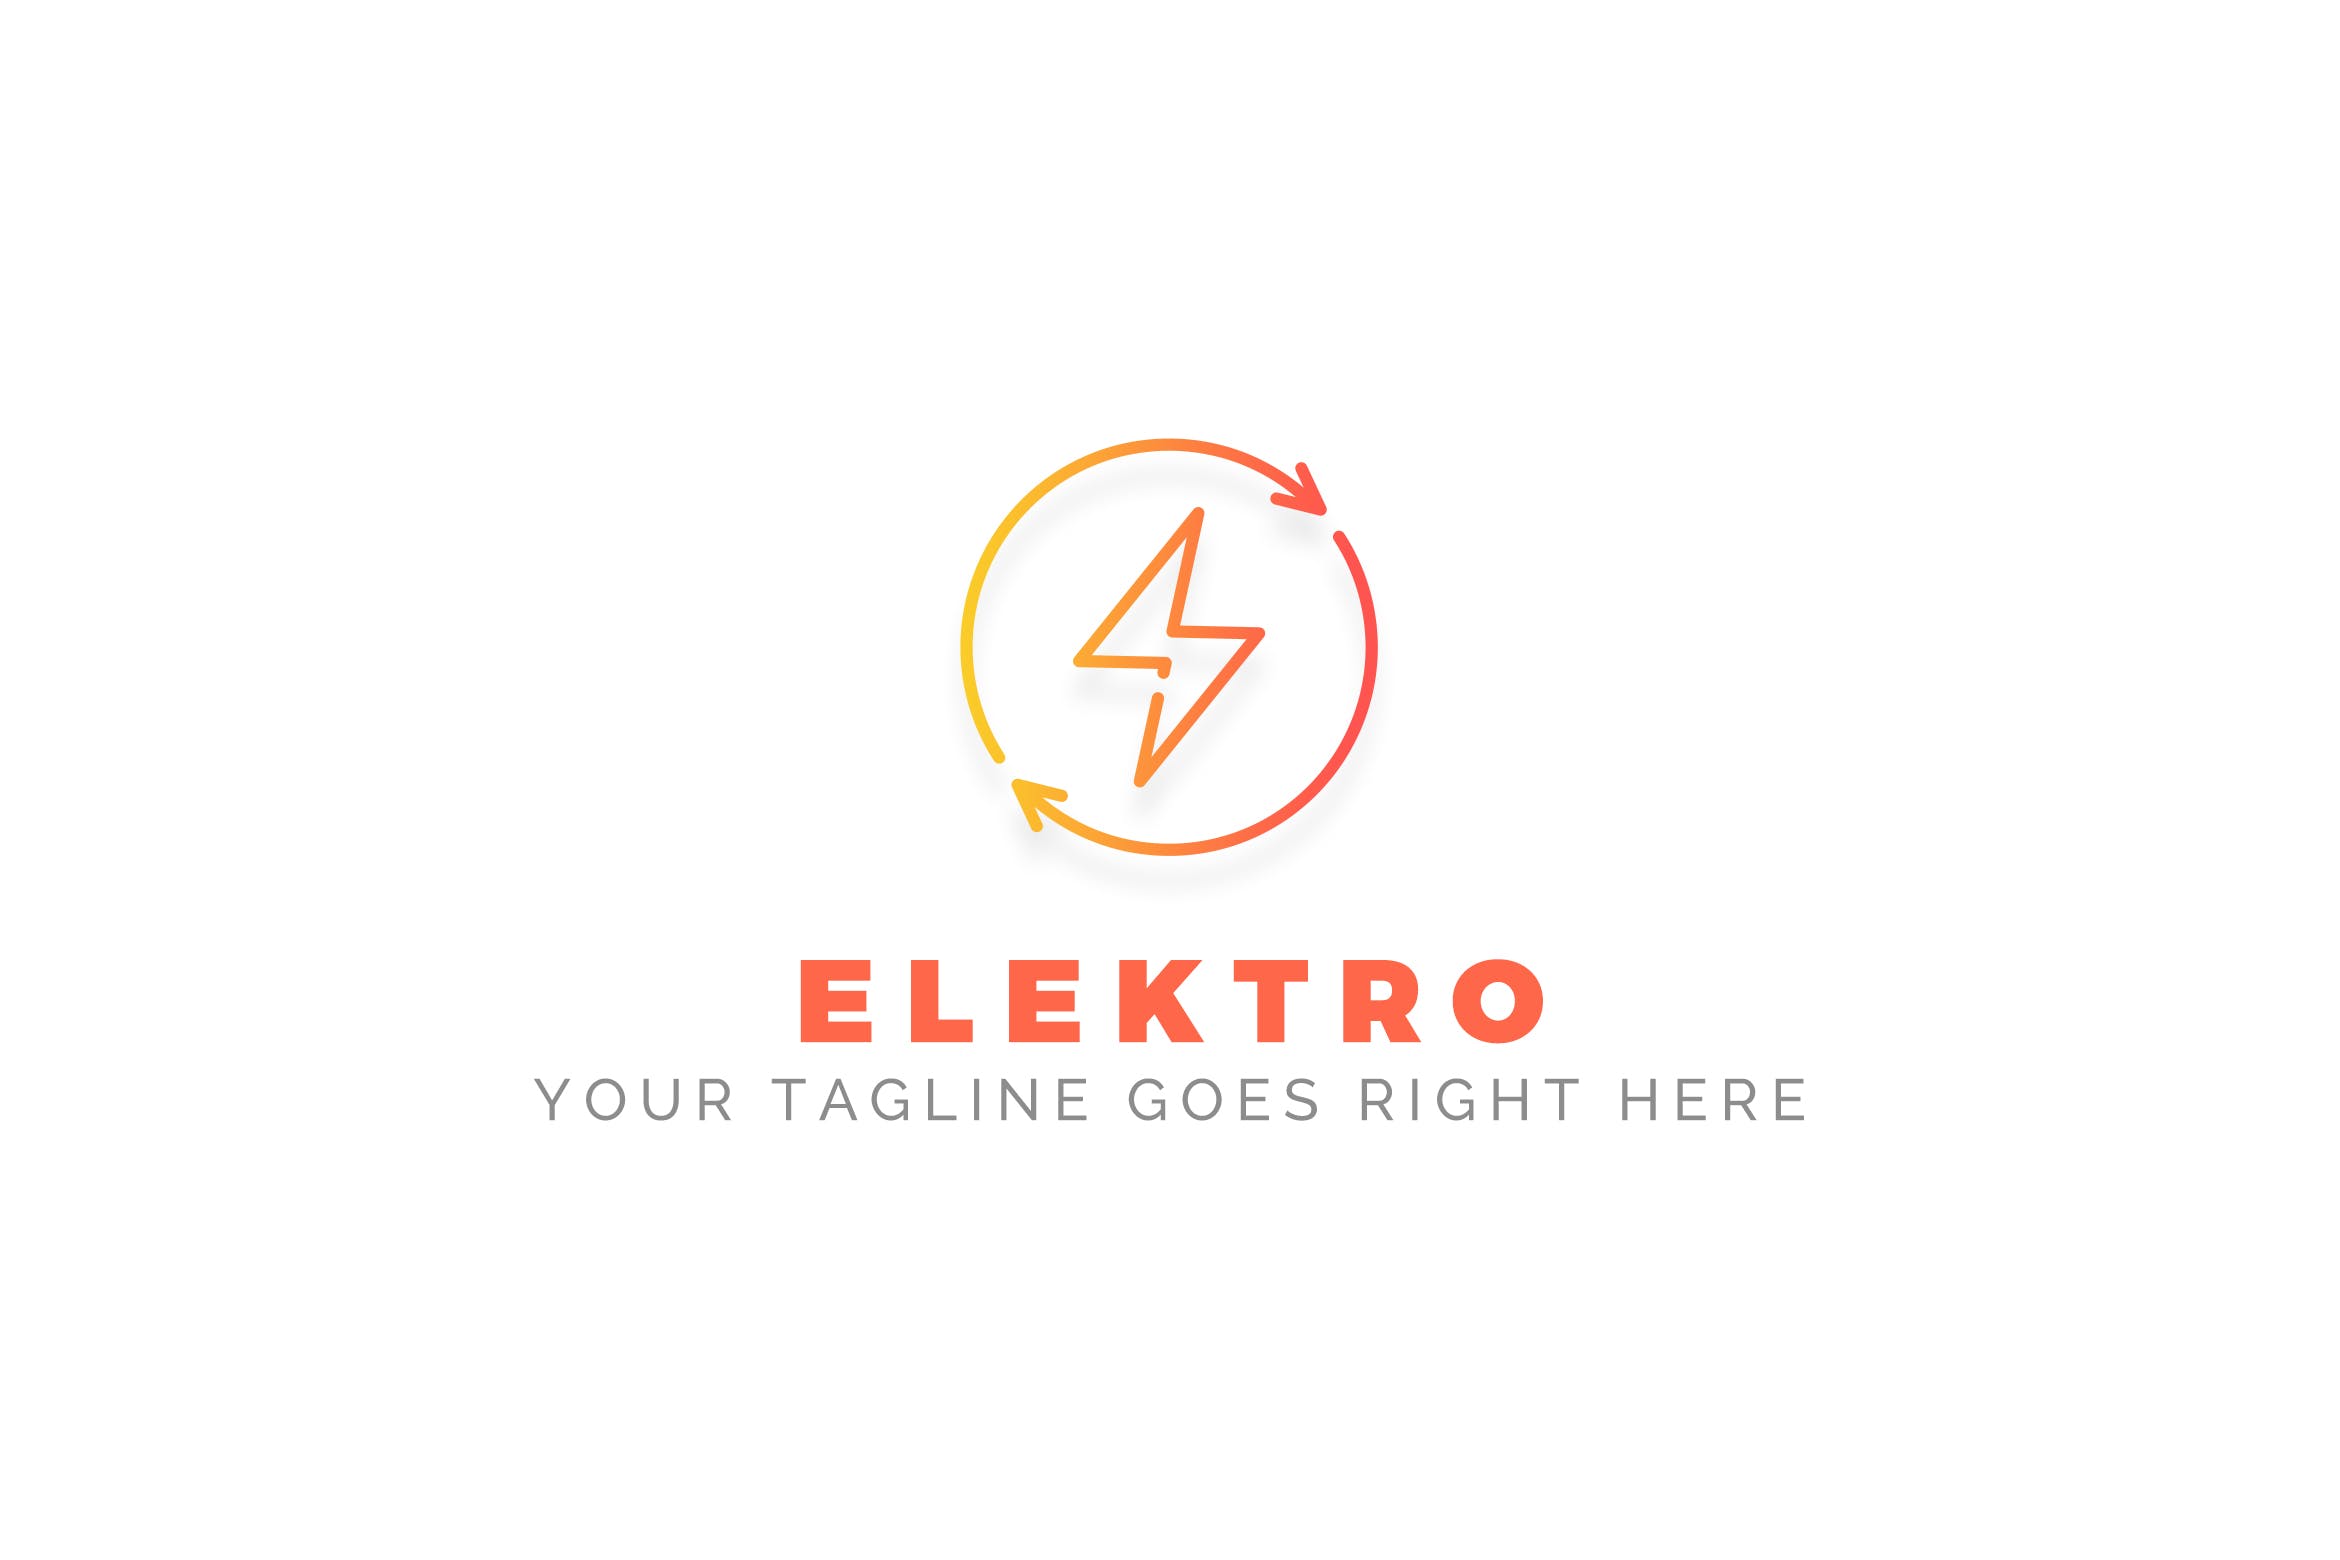 充电宝/移动电源/充电设备品牌Logo设计素材中国精选模板 Elektro – Electrician Logo Template插图